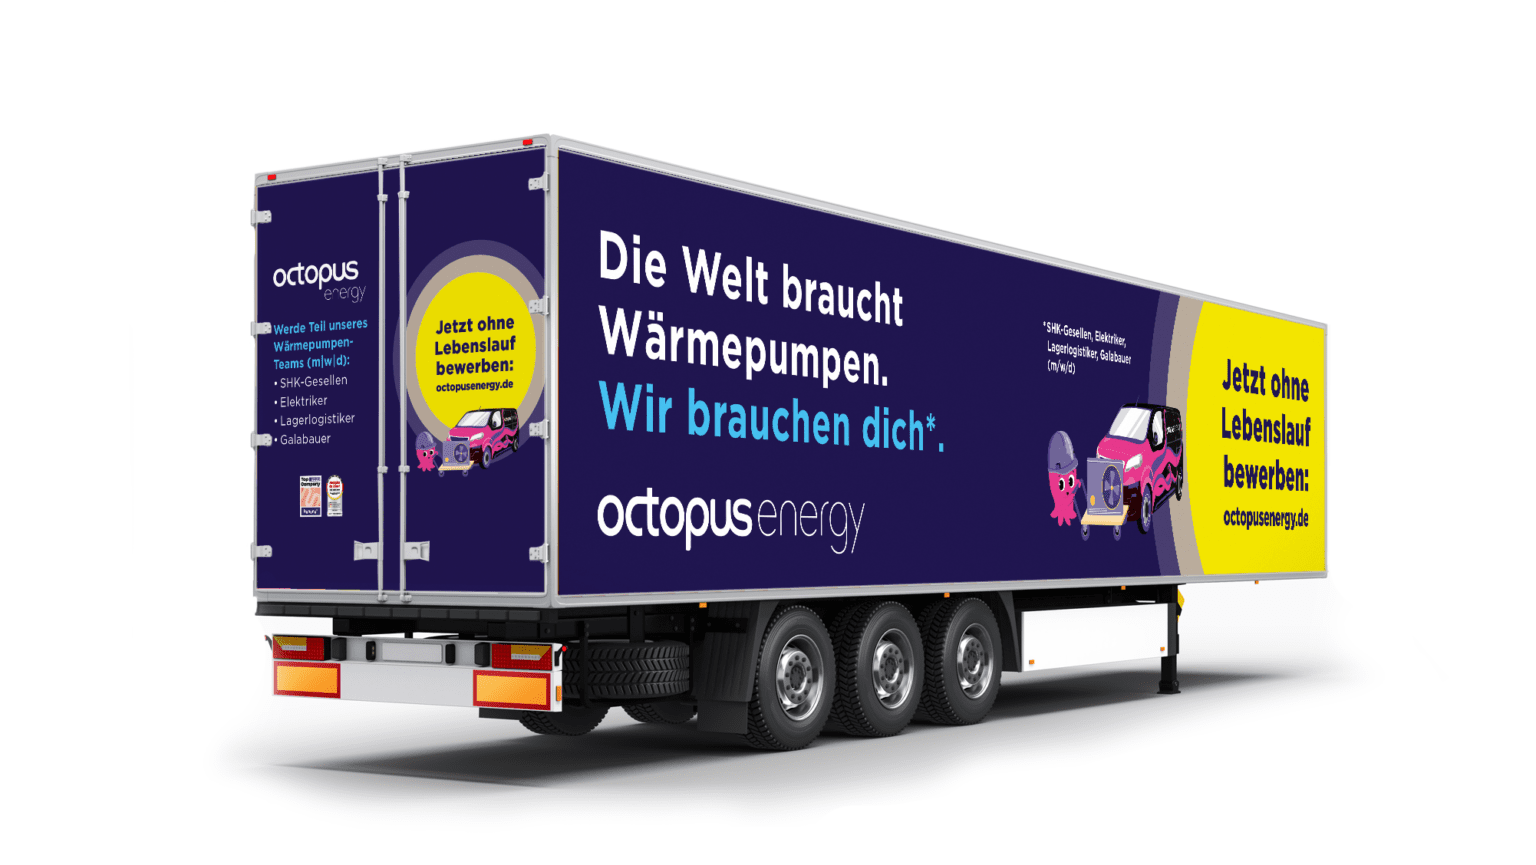 Der Octopus Energy Truck angelt in München neue Mitarbeiter:innen.